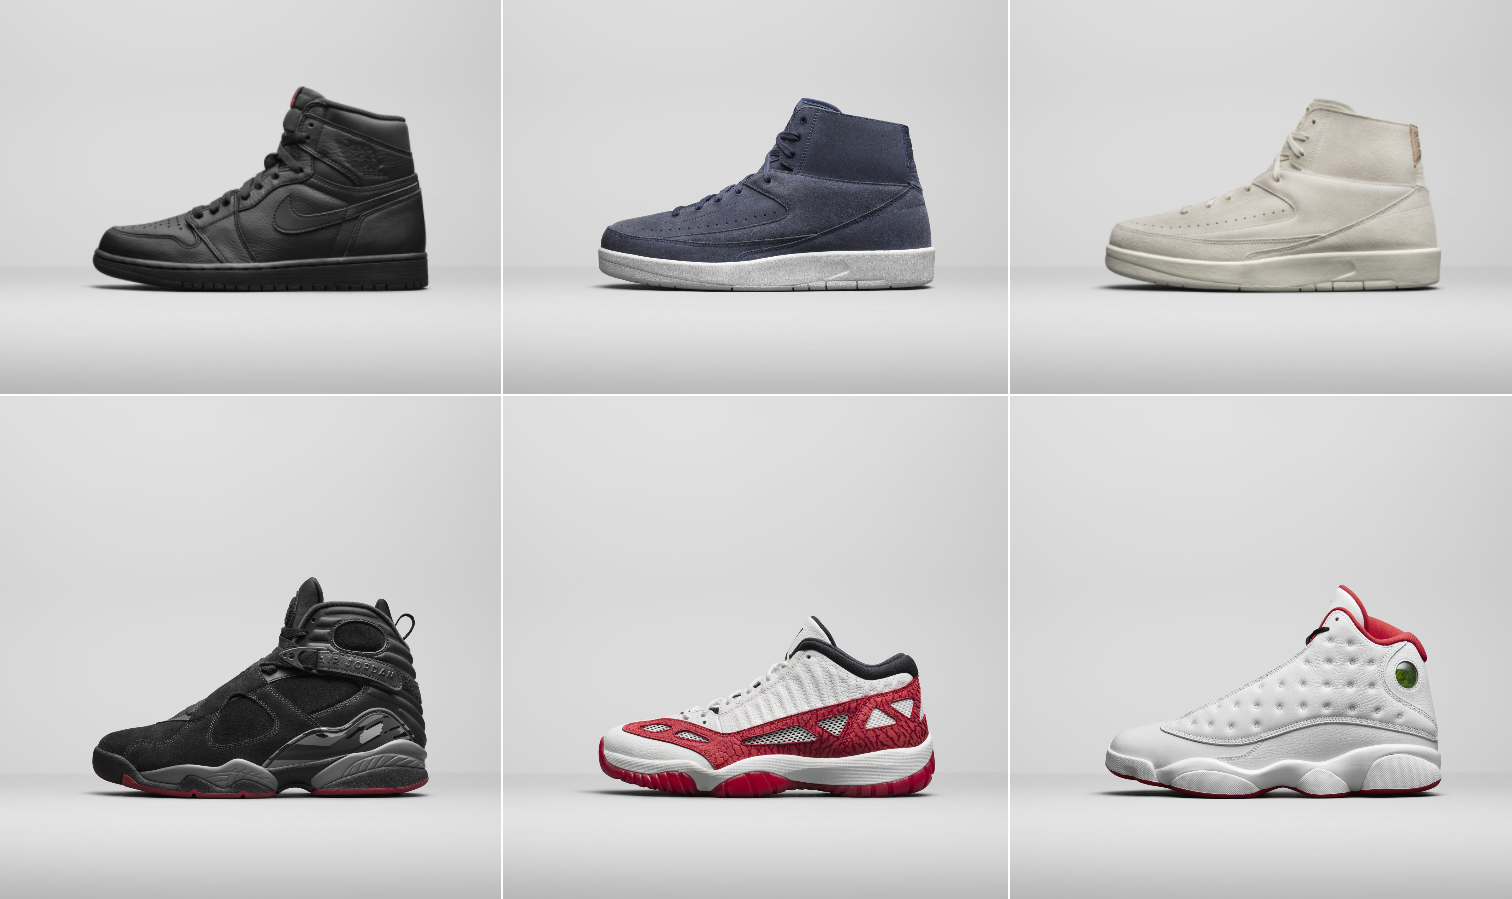 Jordan Brand Fall 2017 Air Jordan Retros